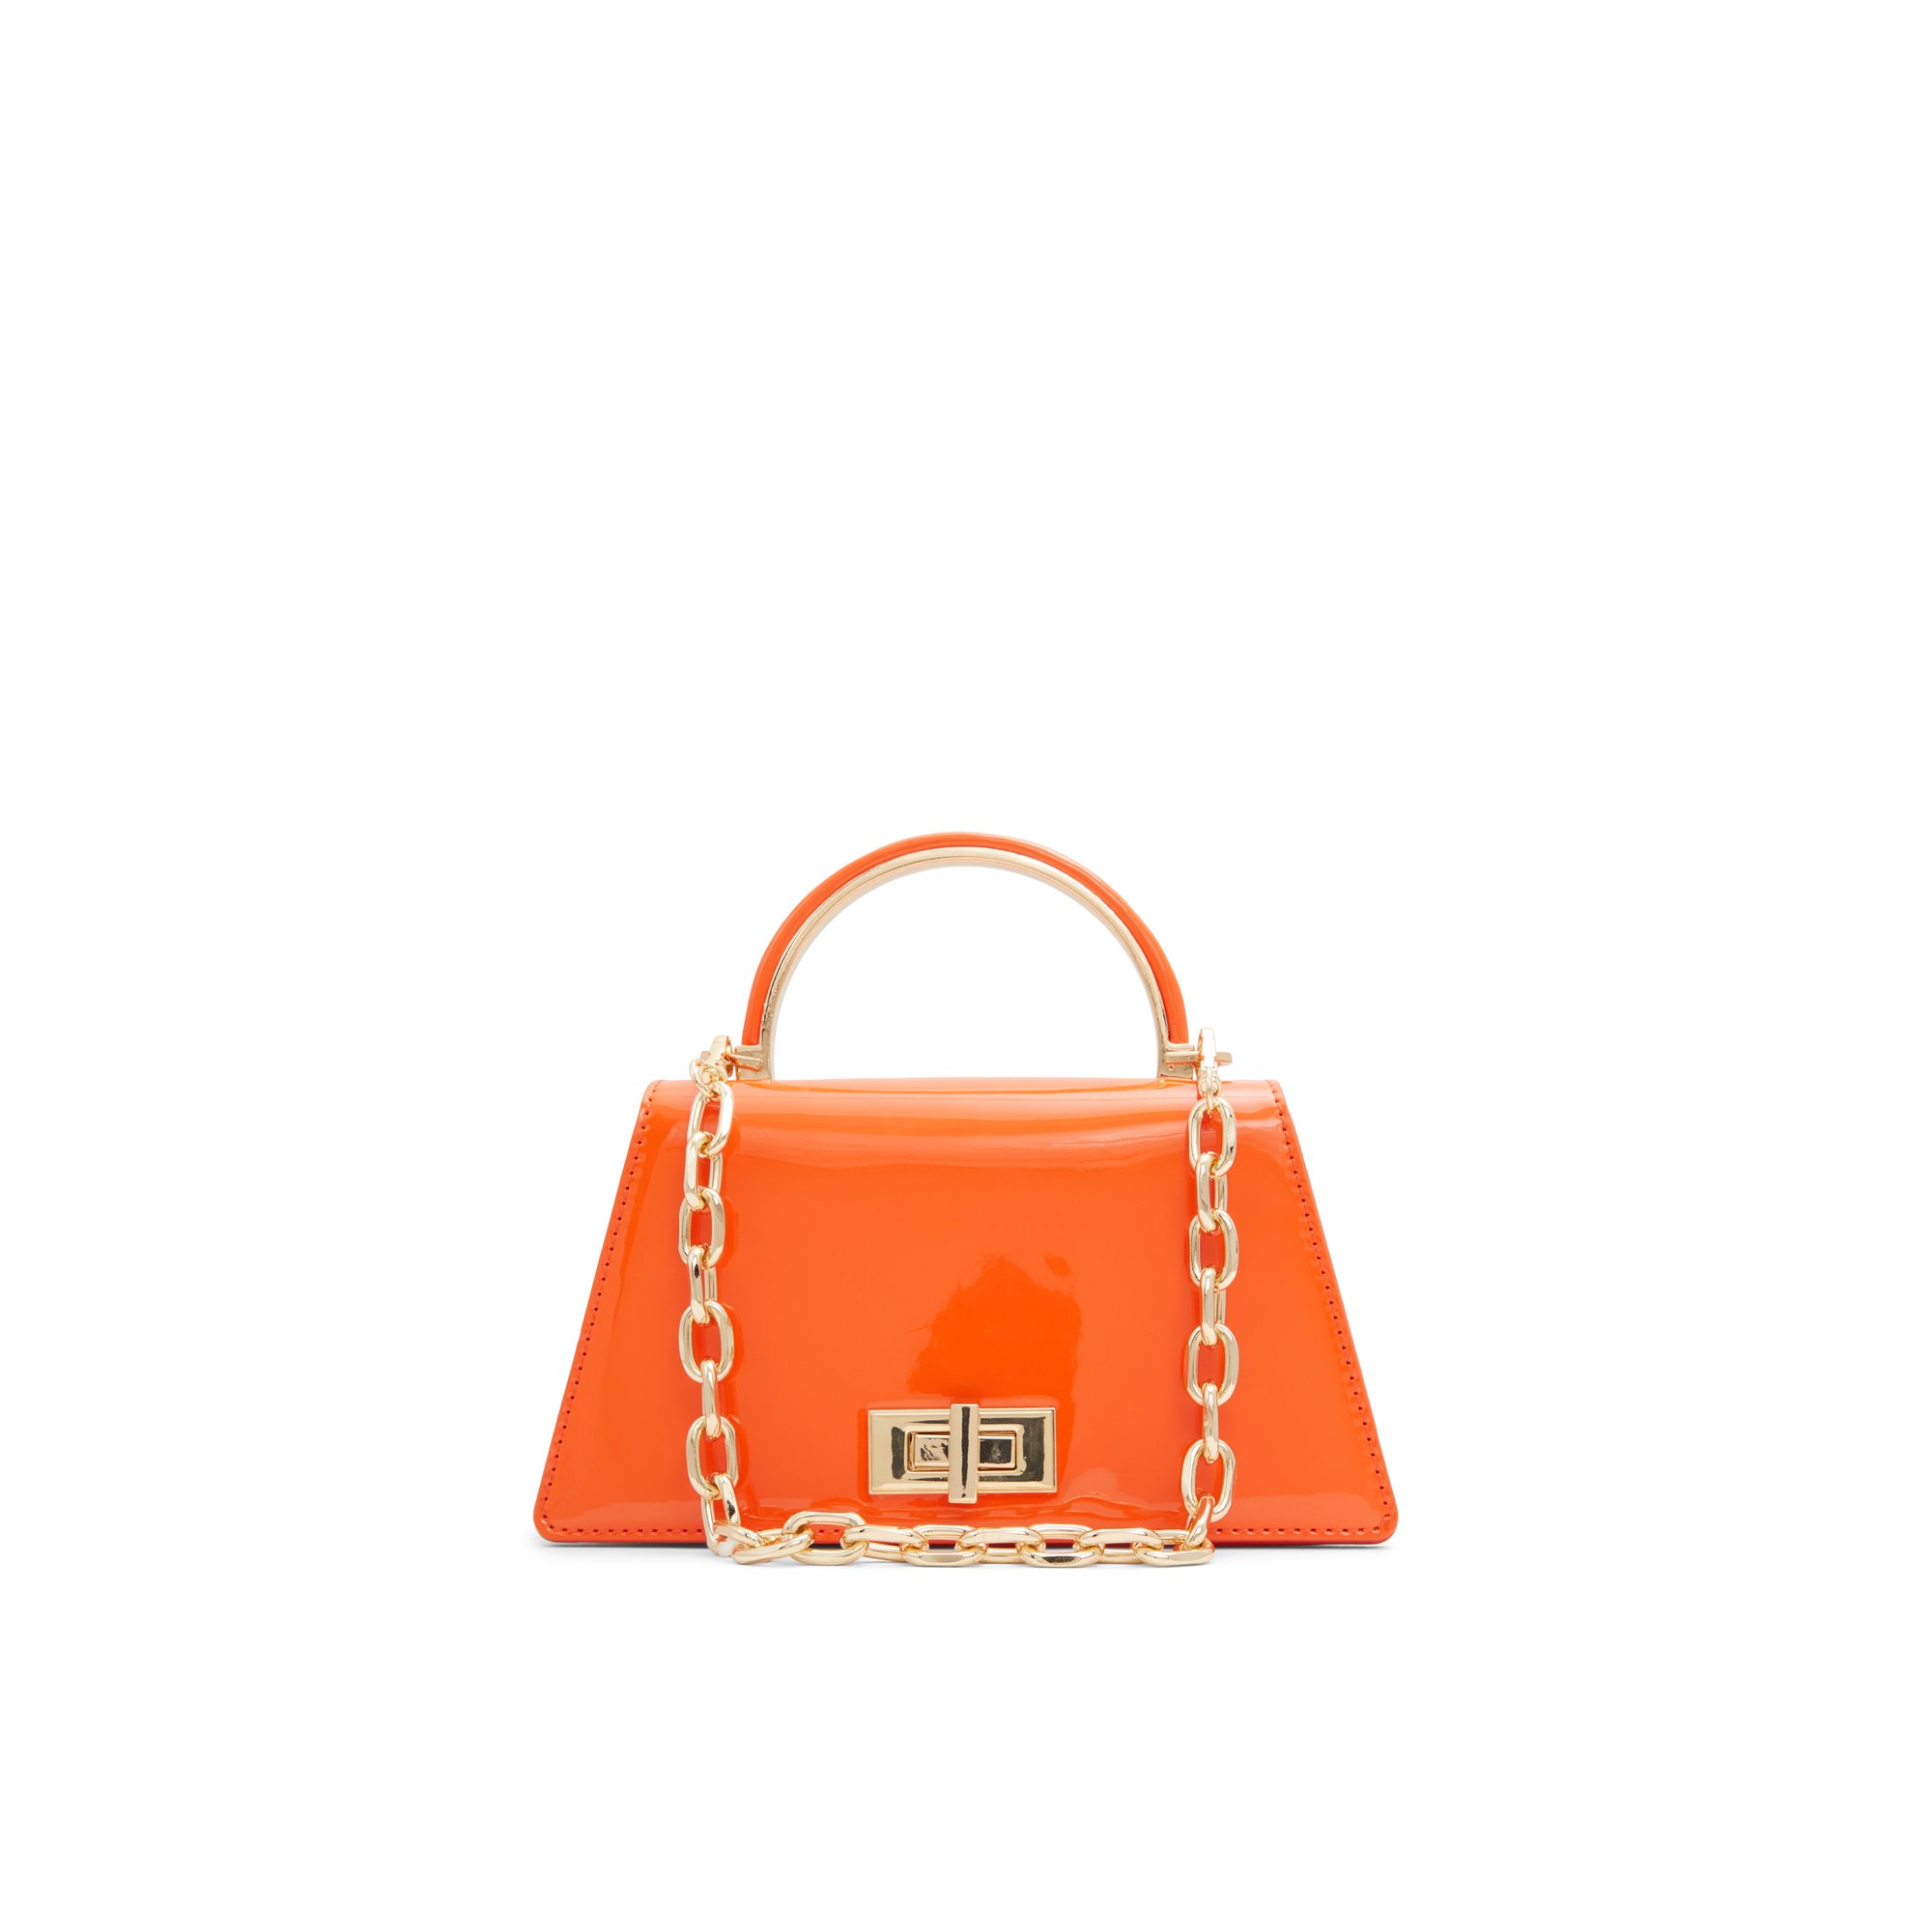 ALDO Katnisx - Women's Top Handle Handbag - Orange